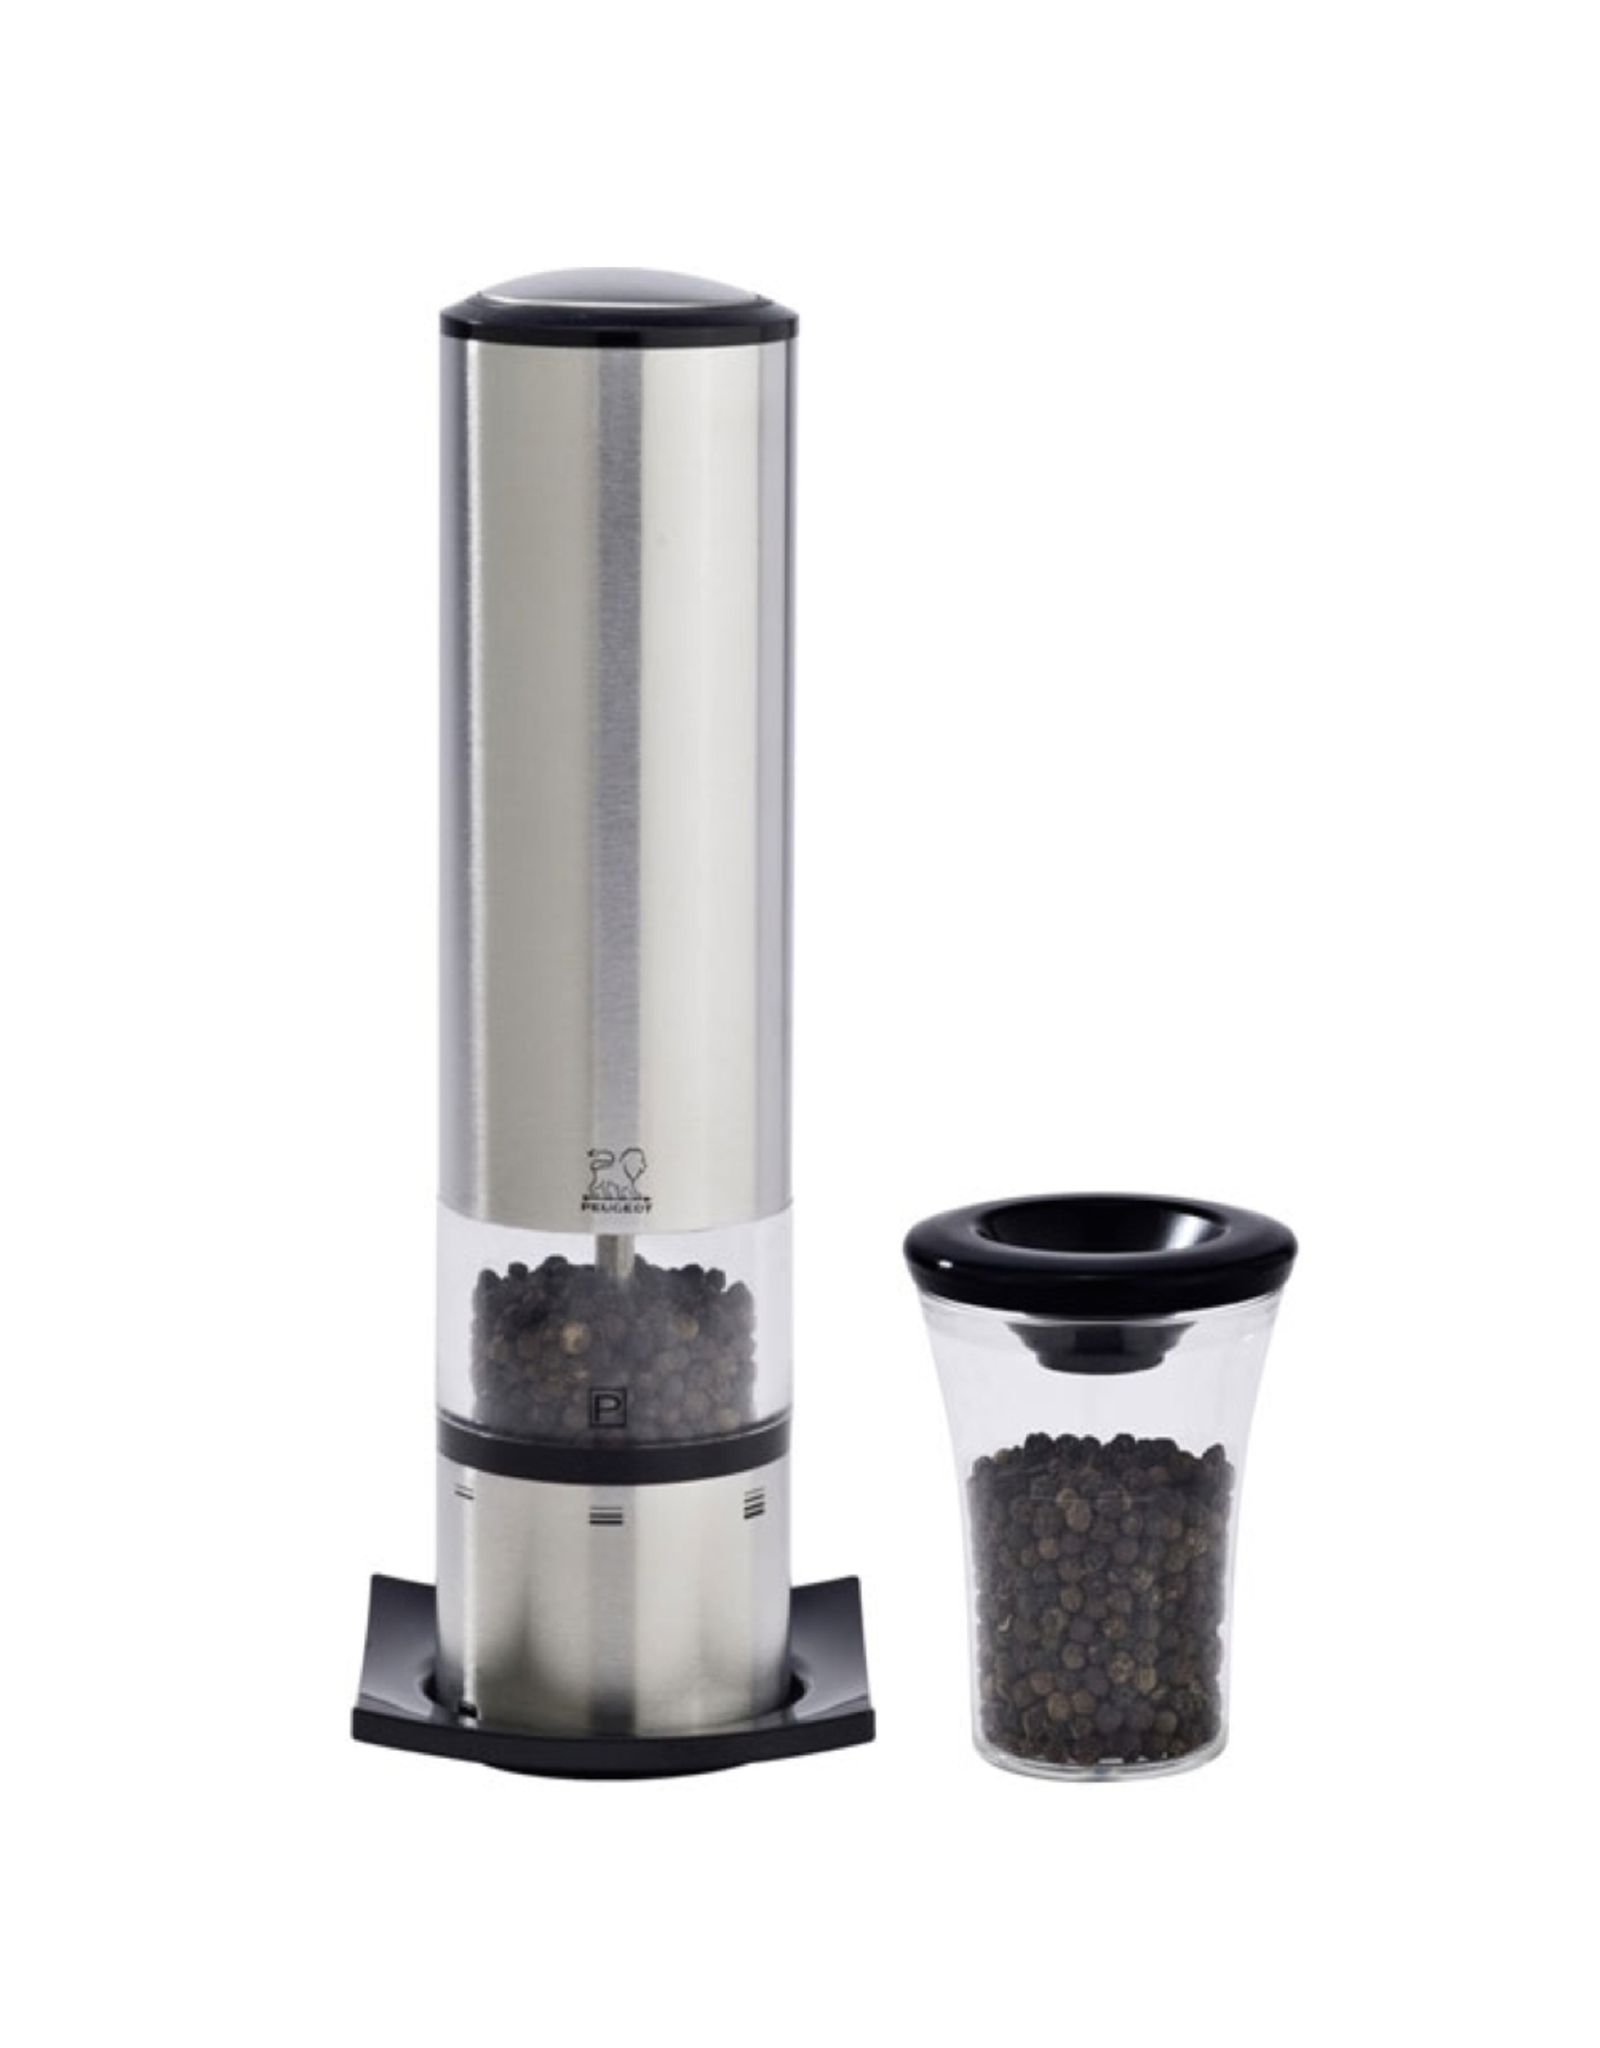 Electric spice grinder - Peugeot salt & pepper grinder